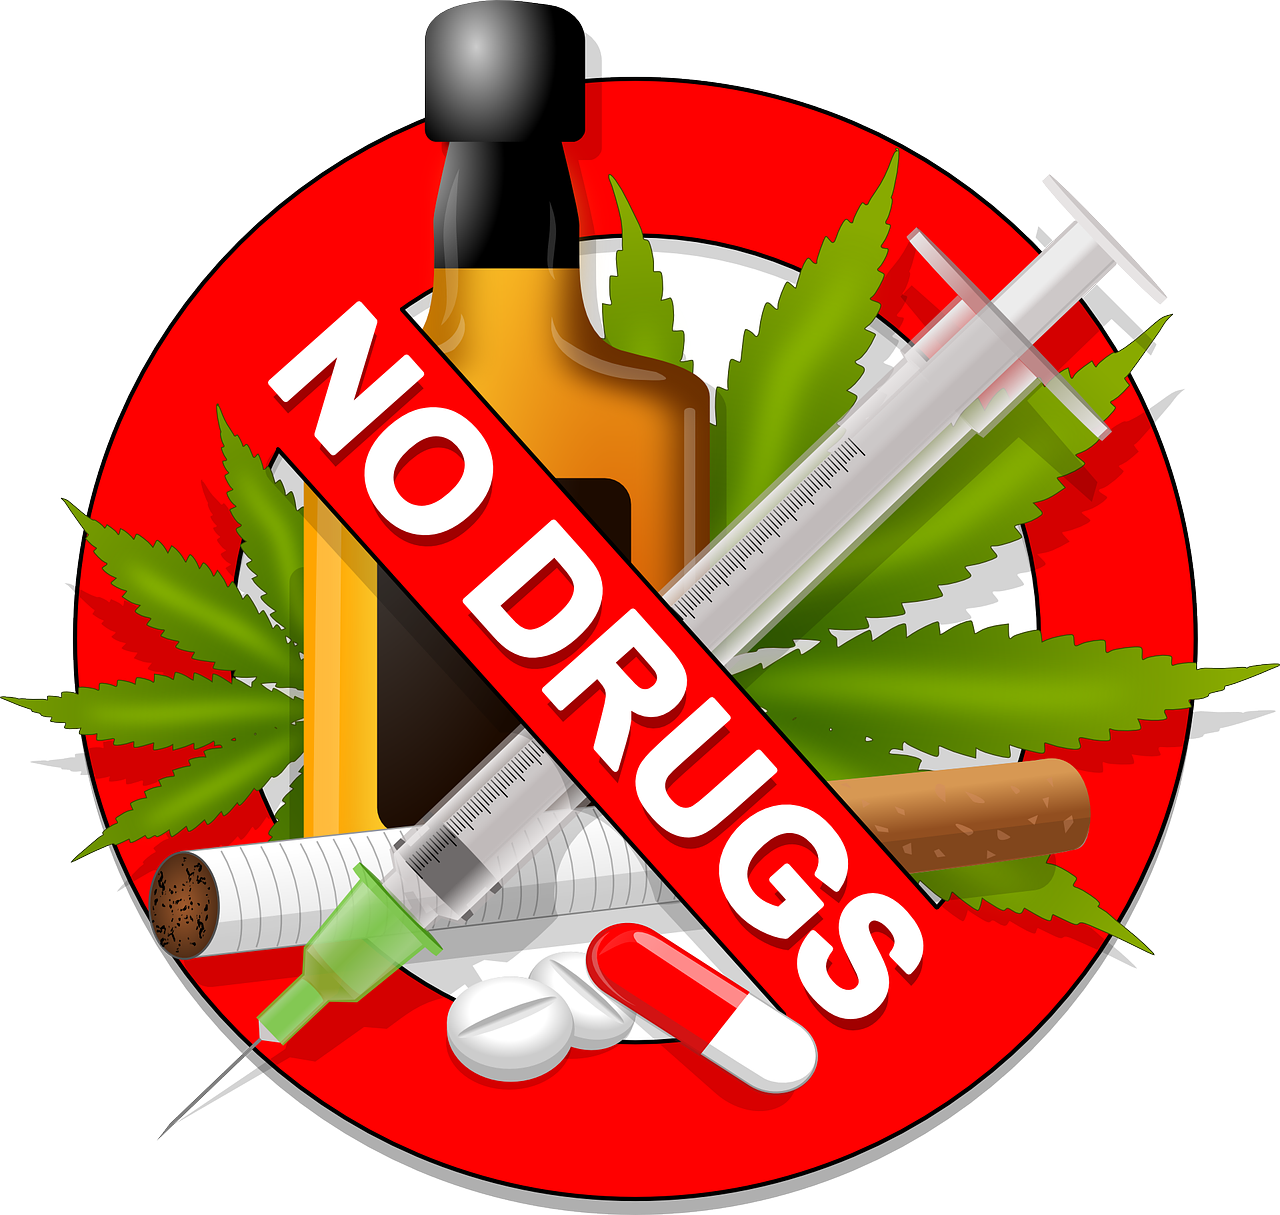 नशीली दवाओं पर प्रतिबंध